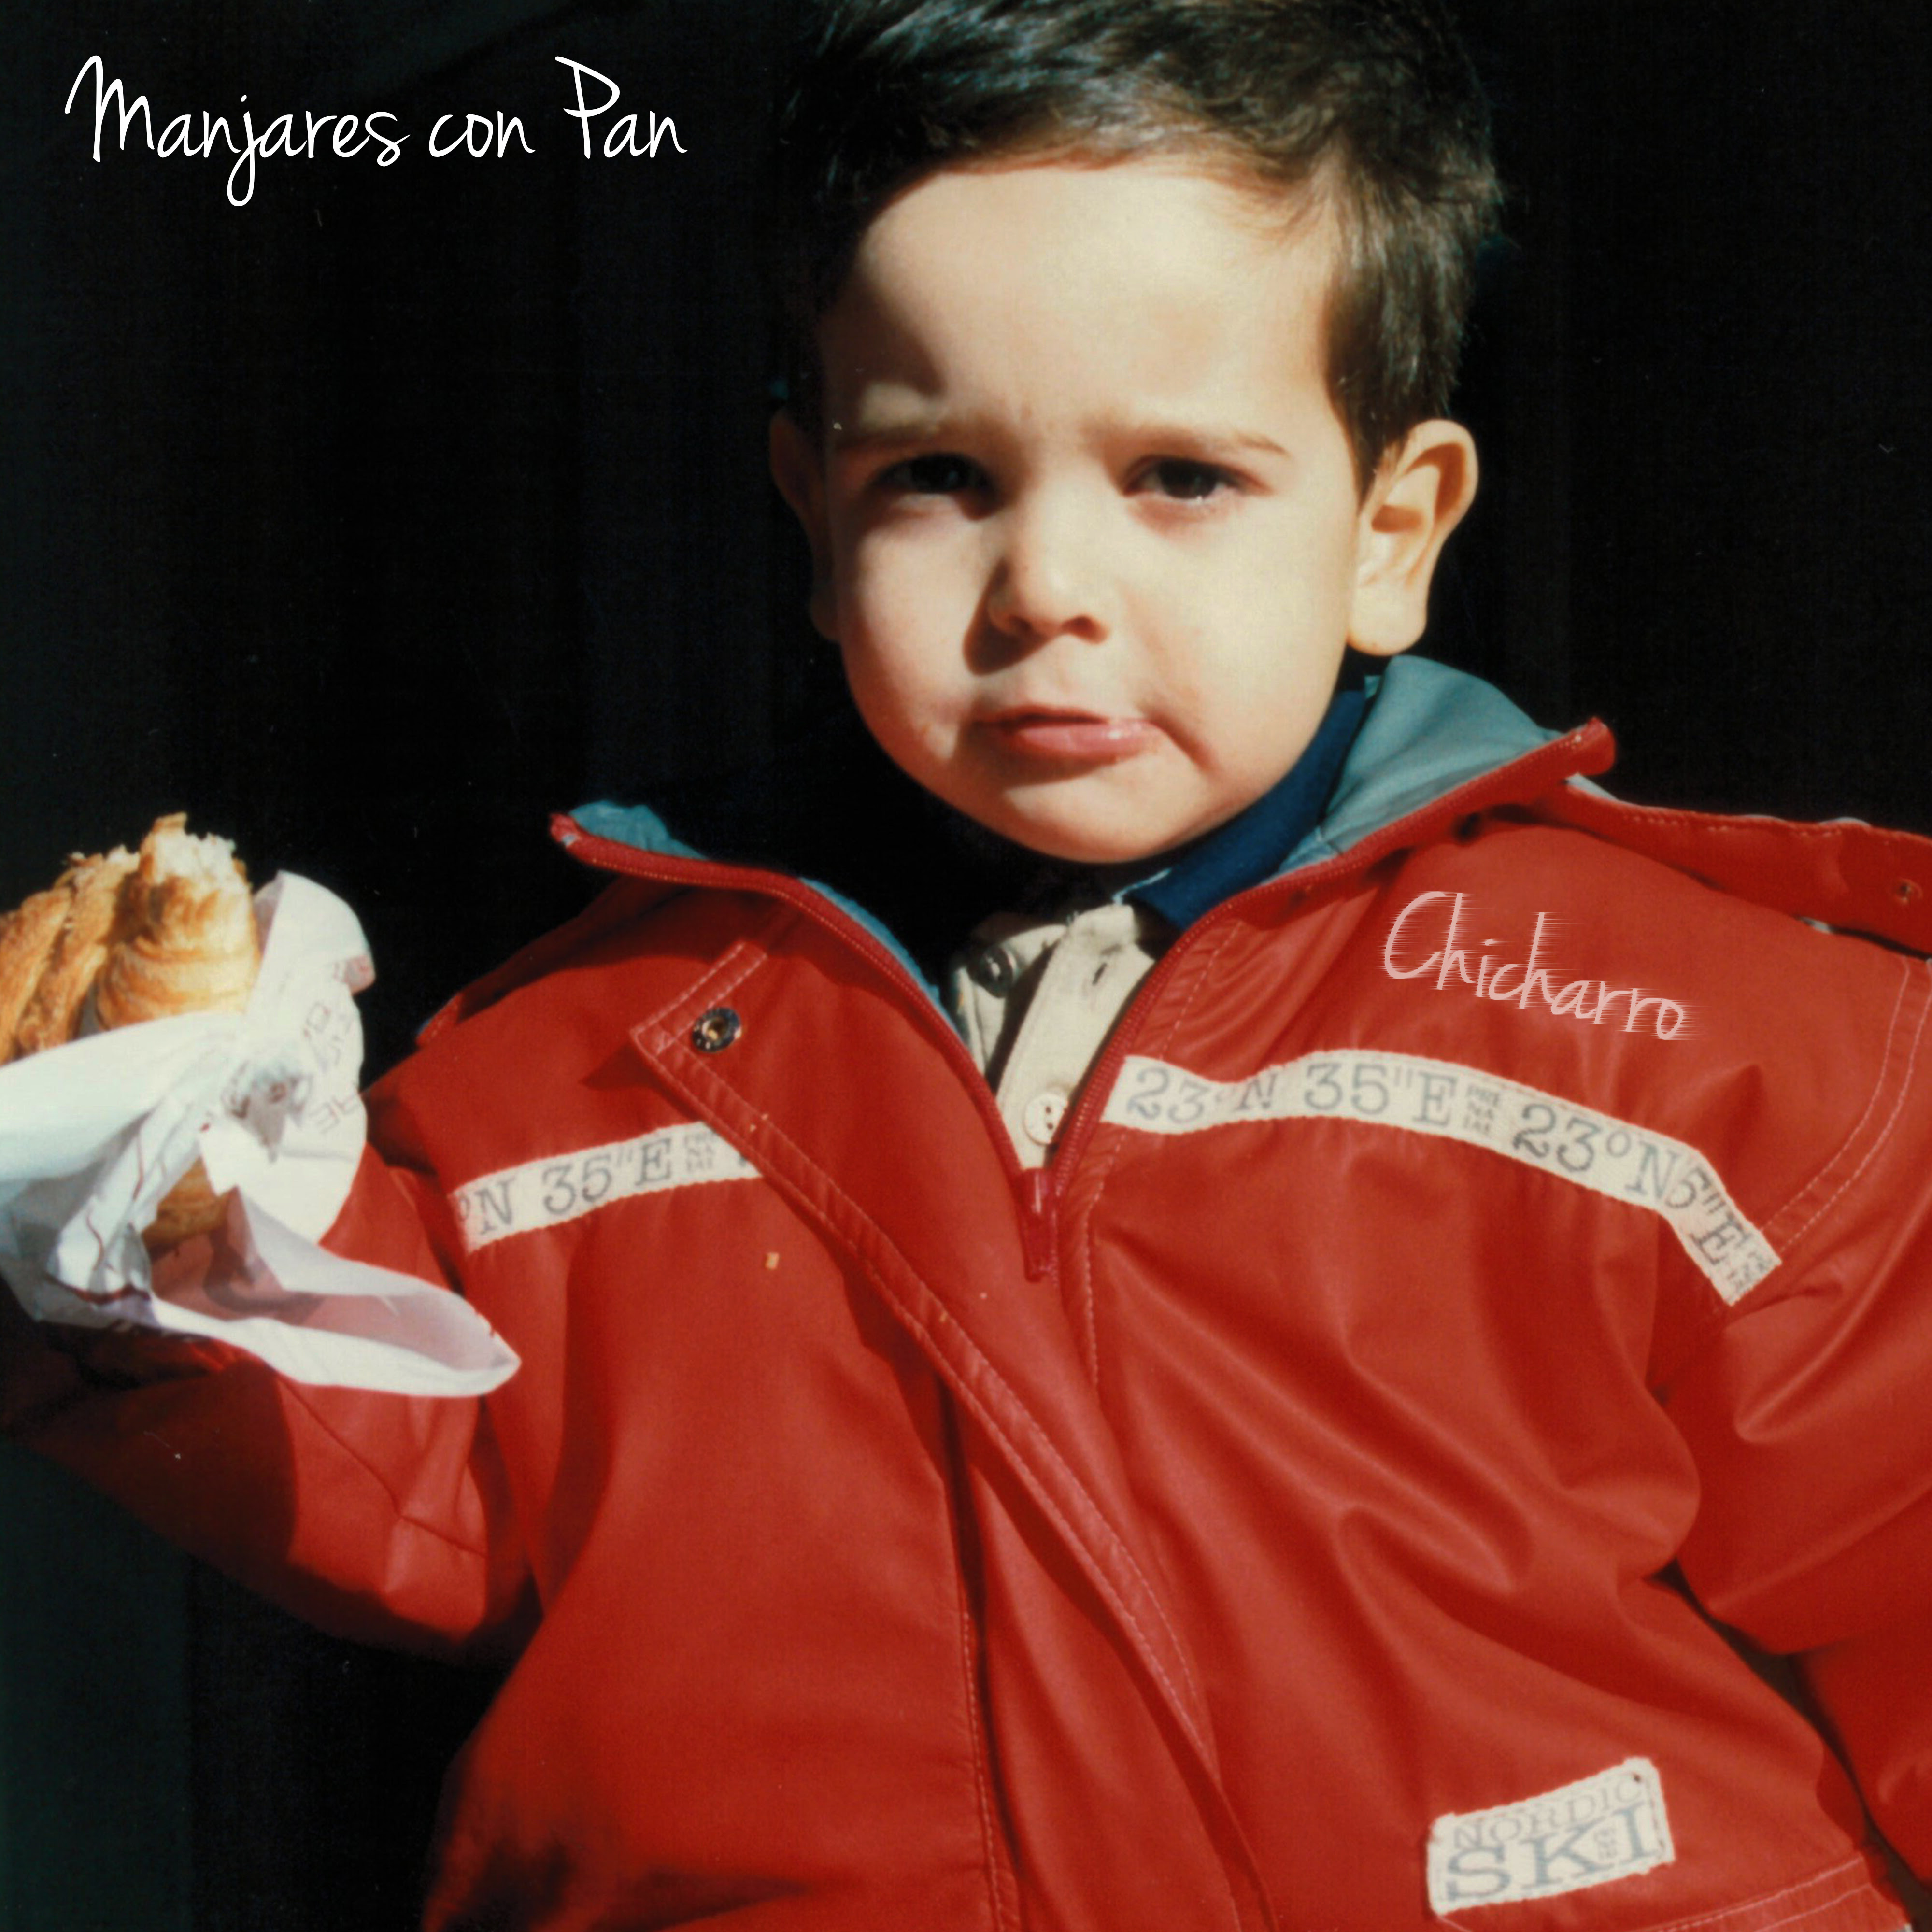 Manjares de Pan portada del single de Chicharro